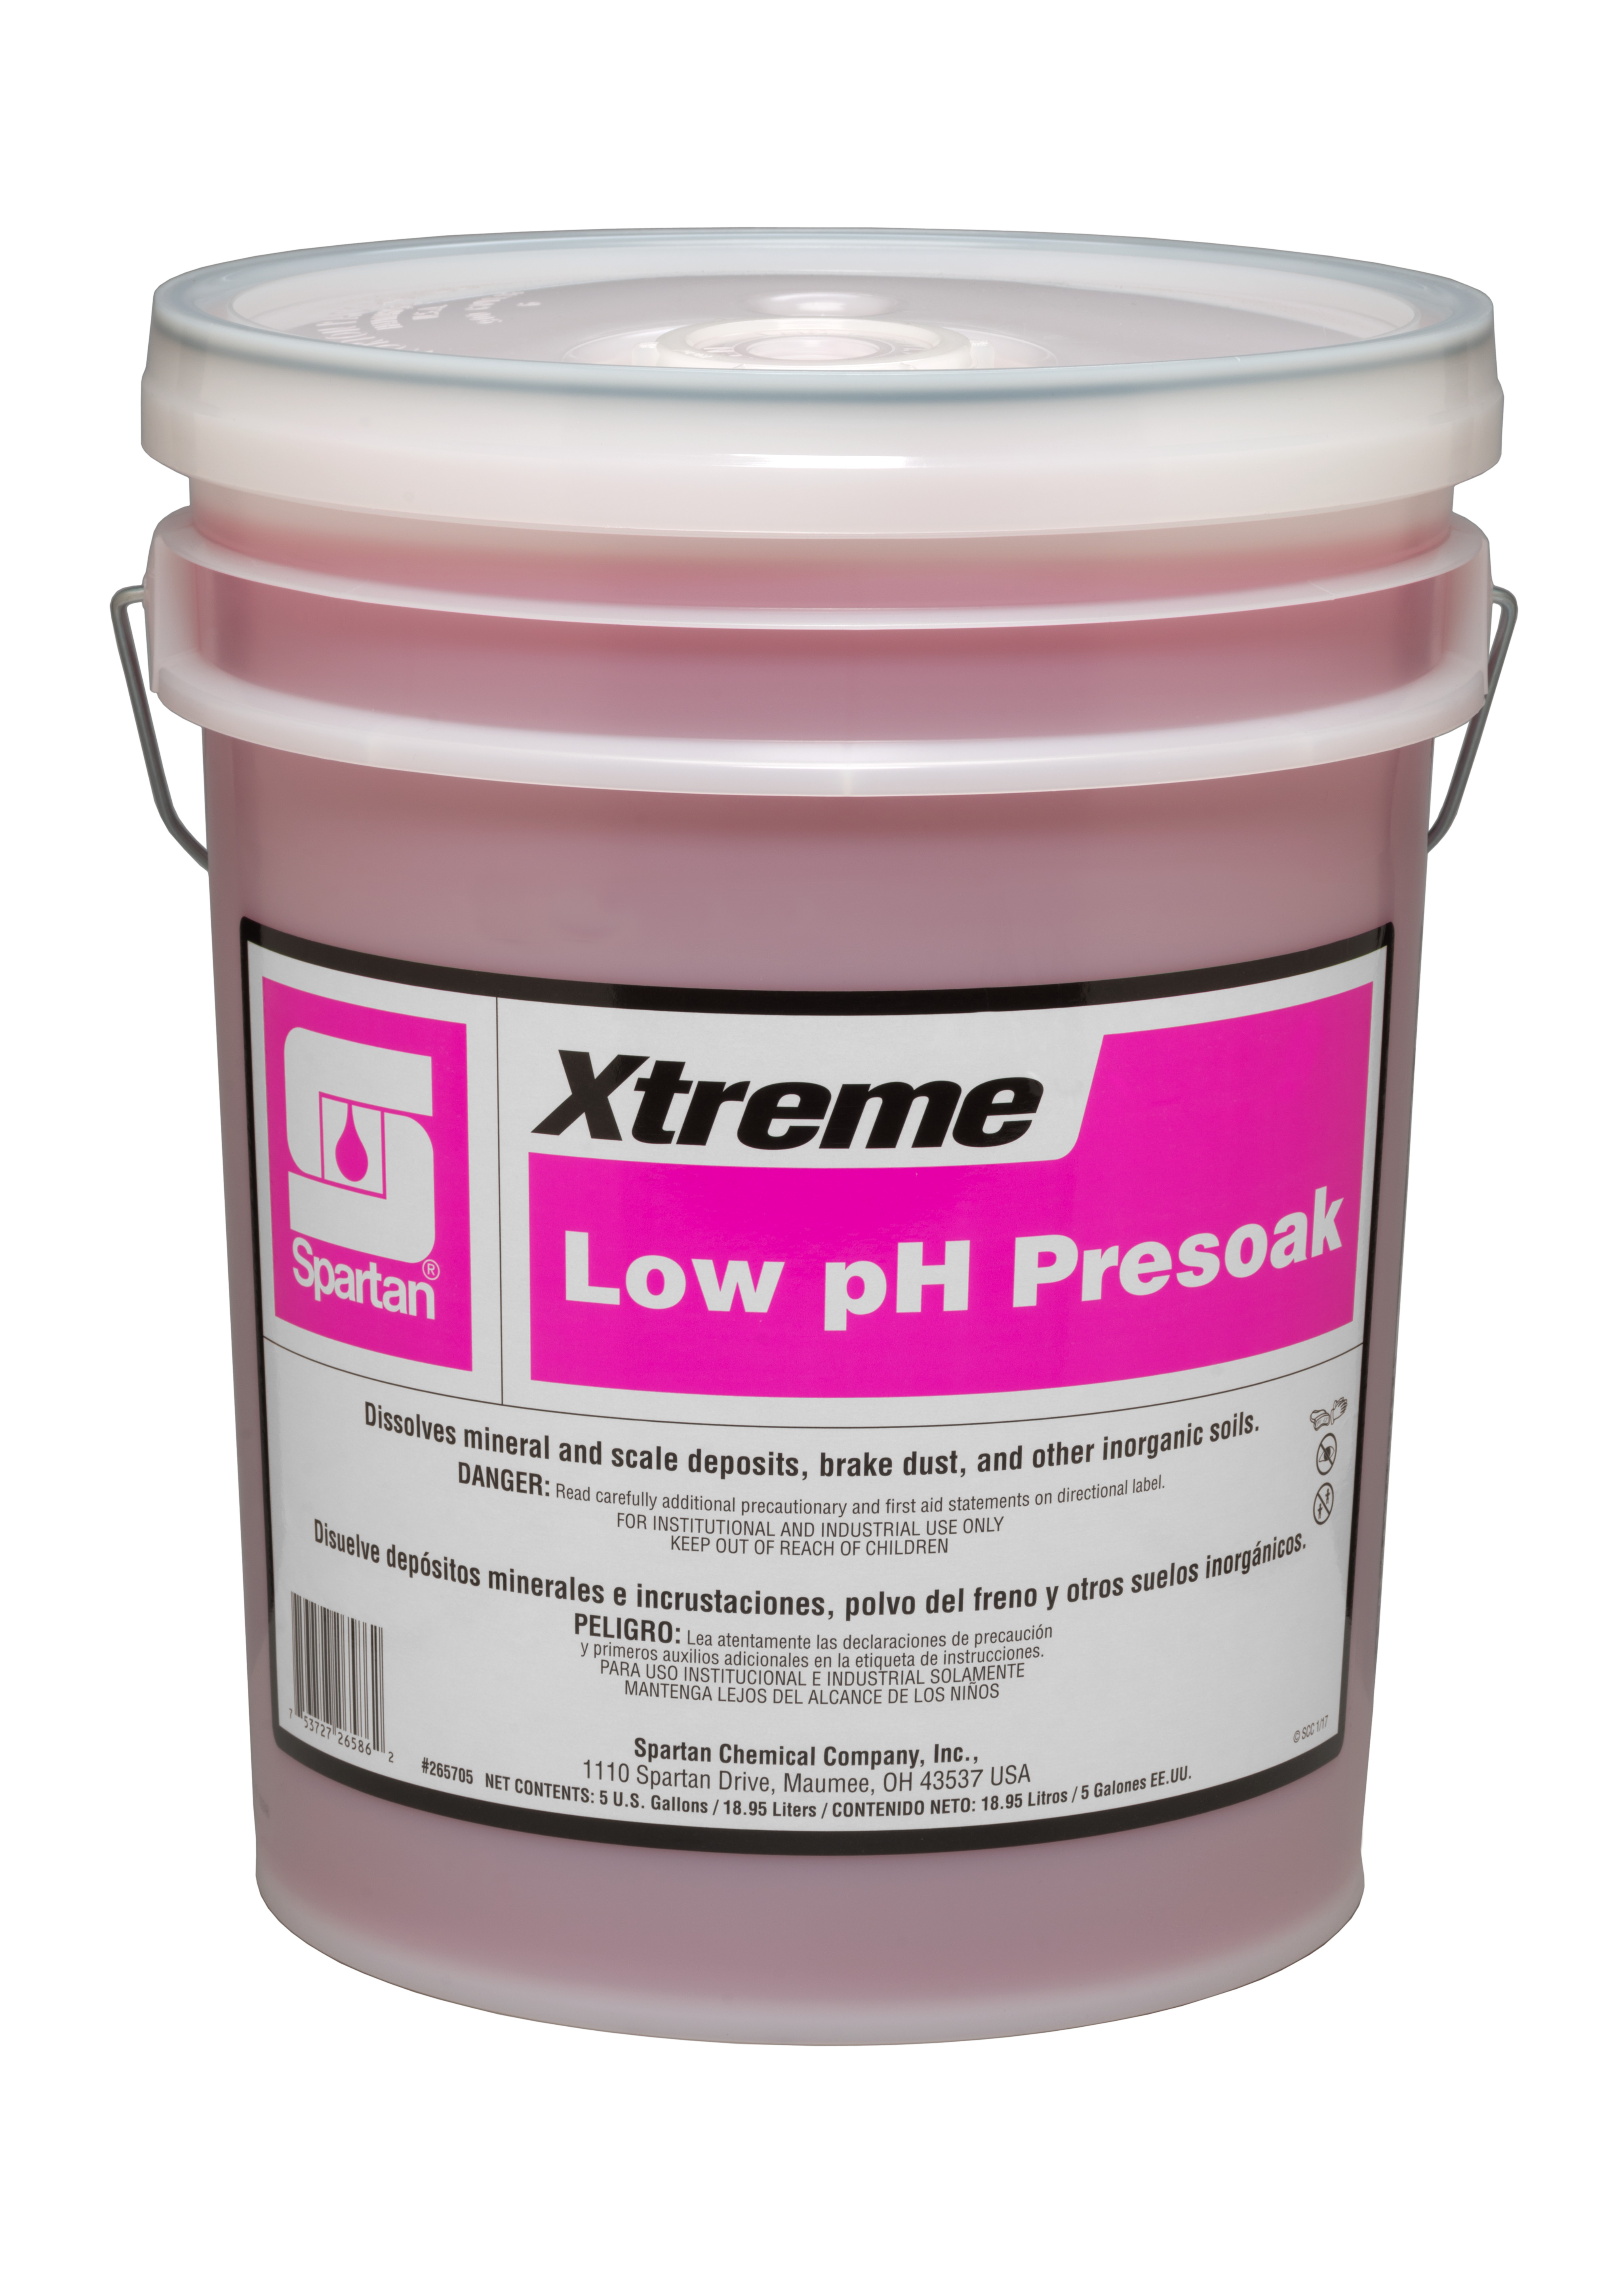 Spartan Chemical Company Xtreme Low pH Presoak, 5 GAL PAIL